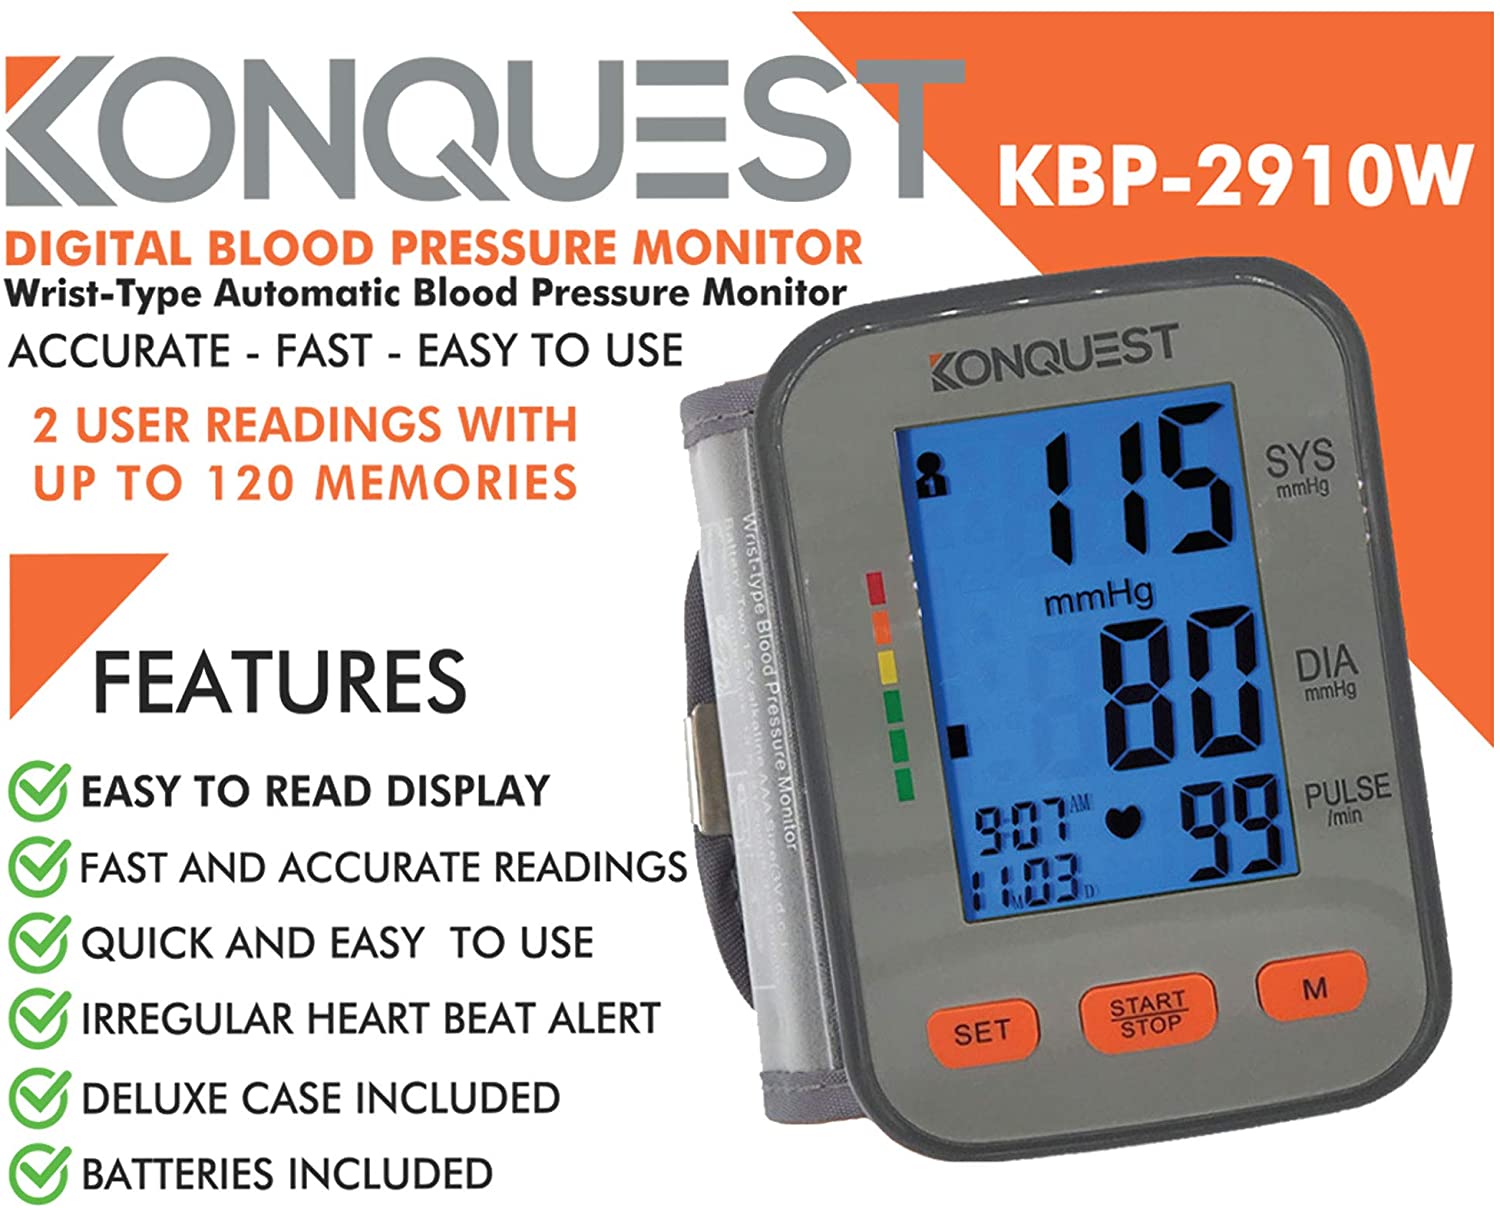 Automatic Digital Wrist Blood Pressure Monitor BP Cuff Machine Home Test  Device